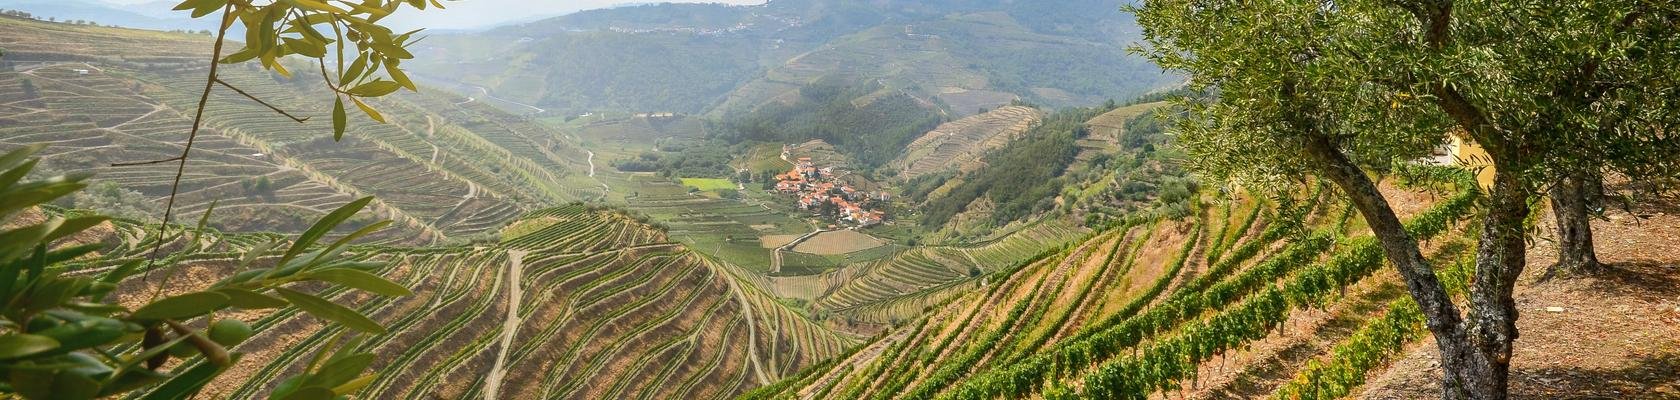 De Douro vallei bij Lamego